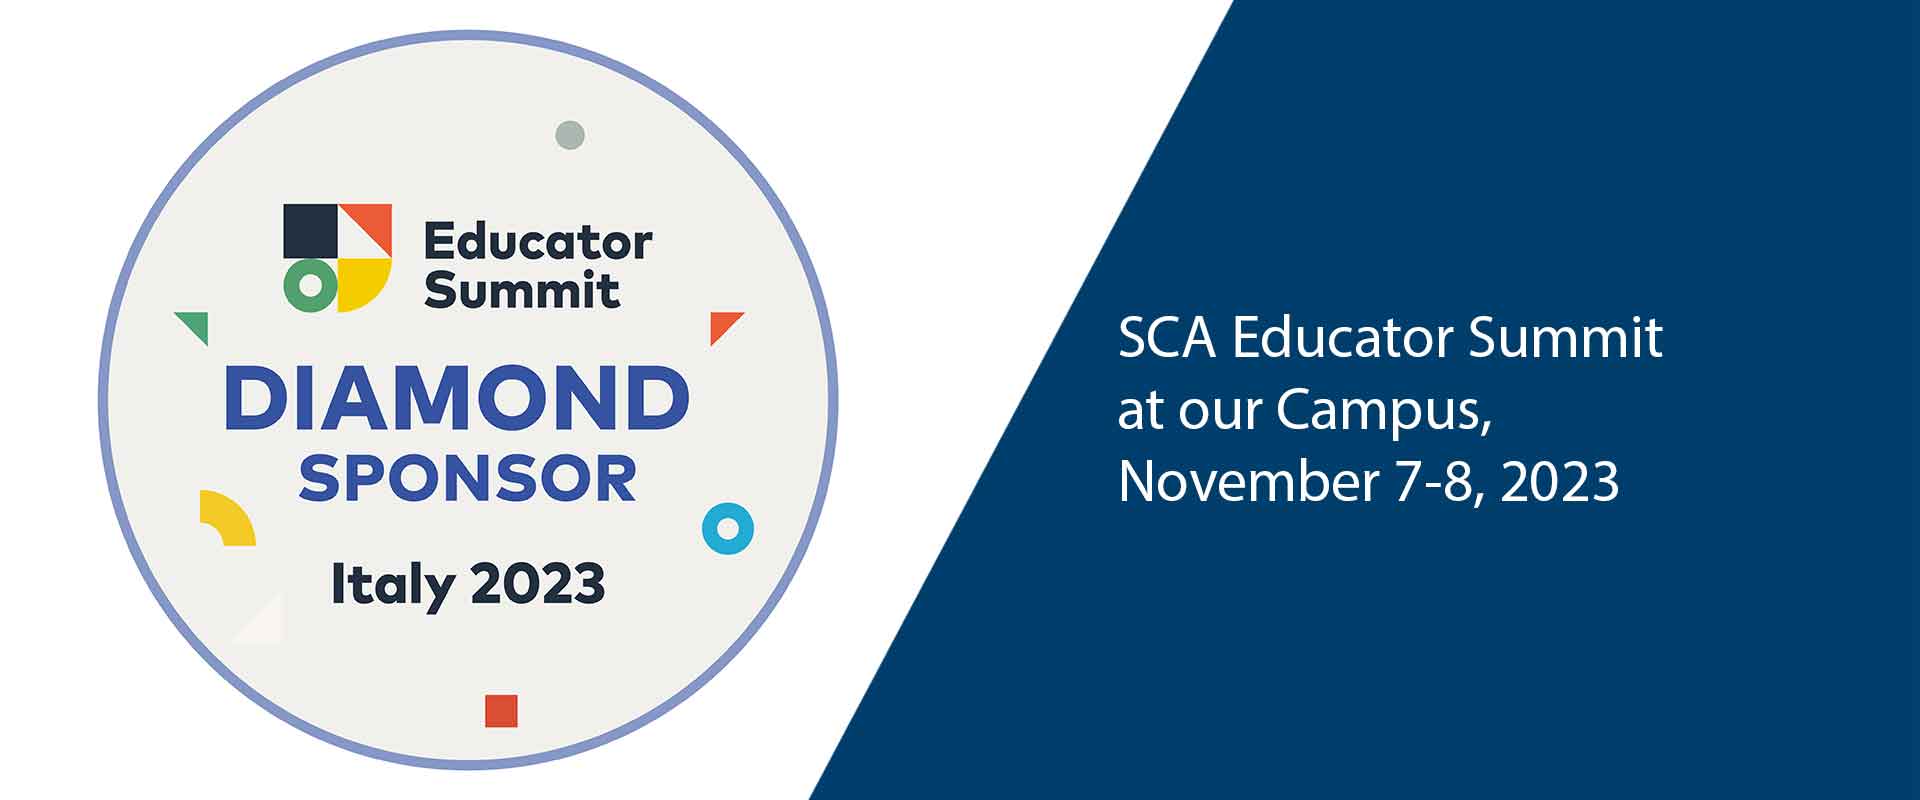 SCA Educator Summit at our Campus, Nov 7-8